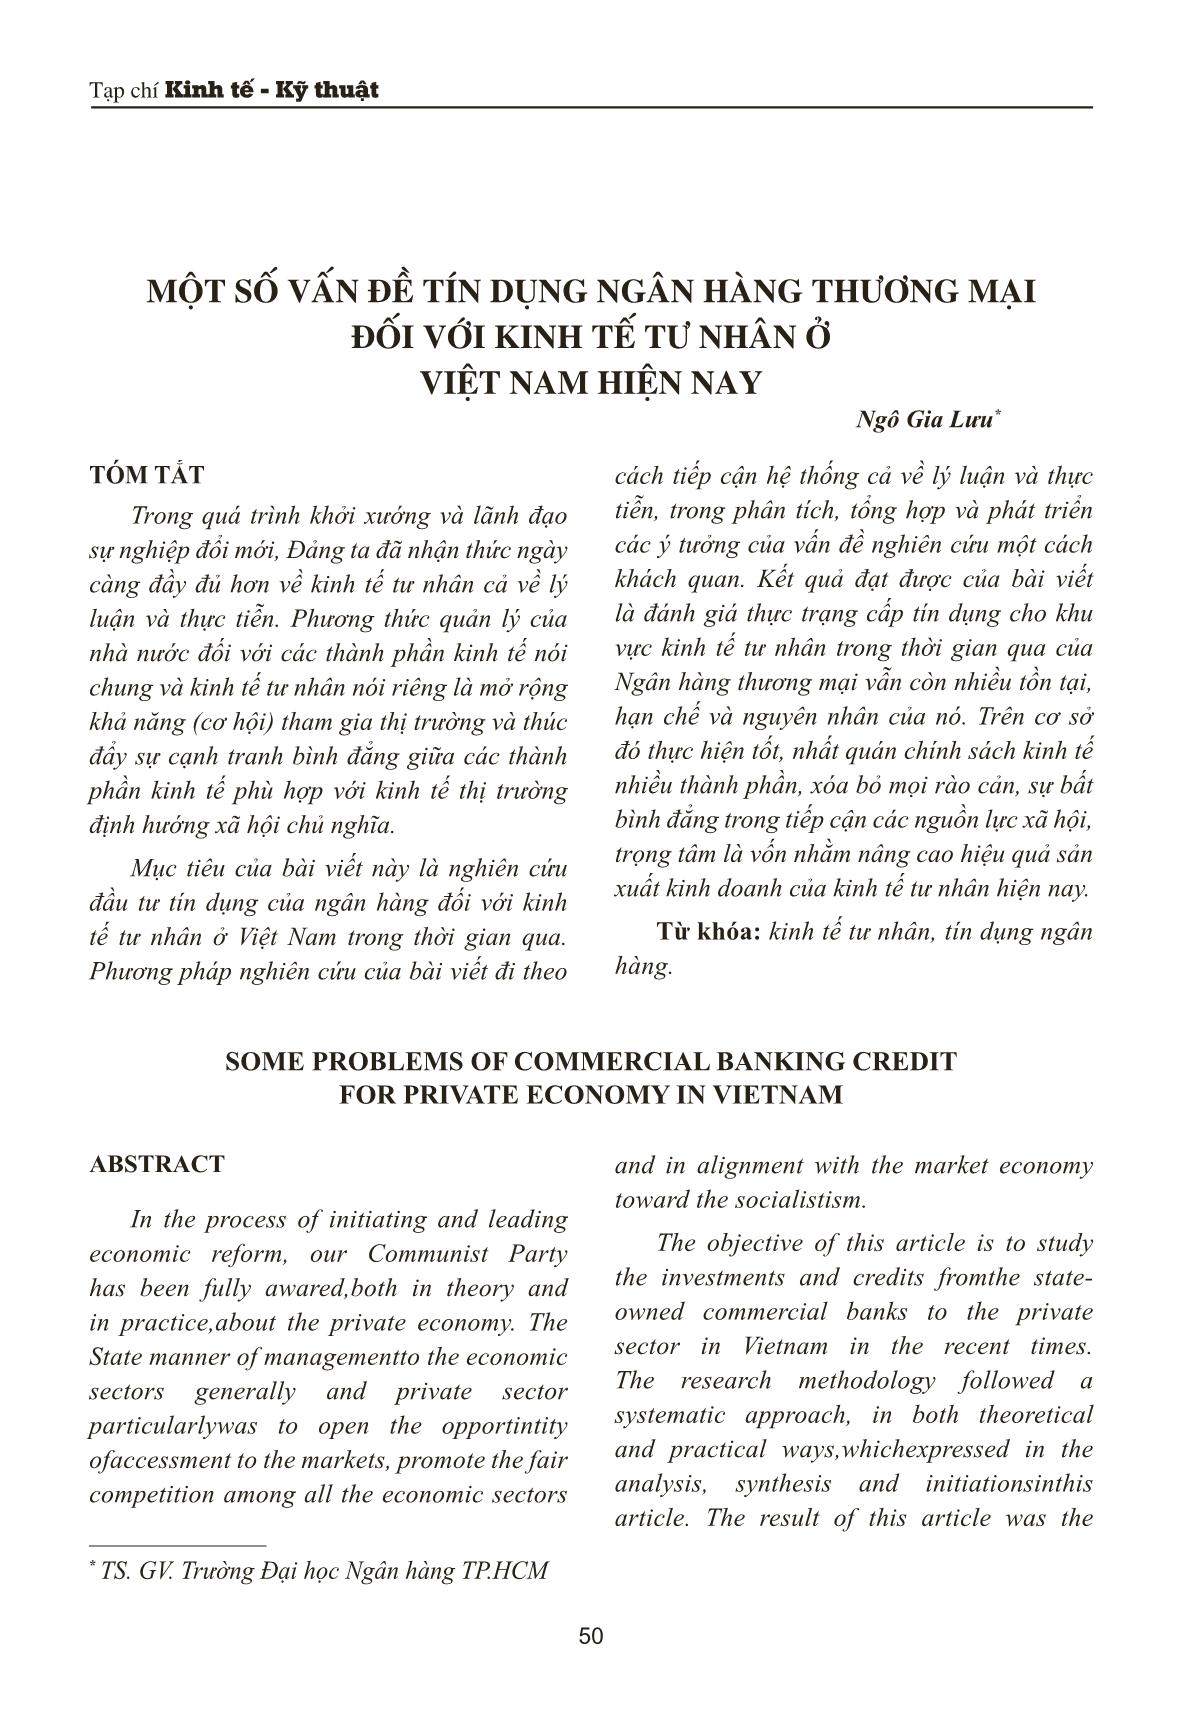 Một số vấn đề tín dụng ngân hàng thương mại đối với kinh tế tư nhân ở Việt Nam hiện nay trang 1